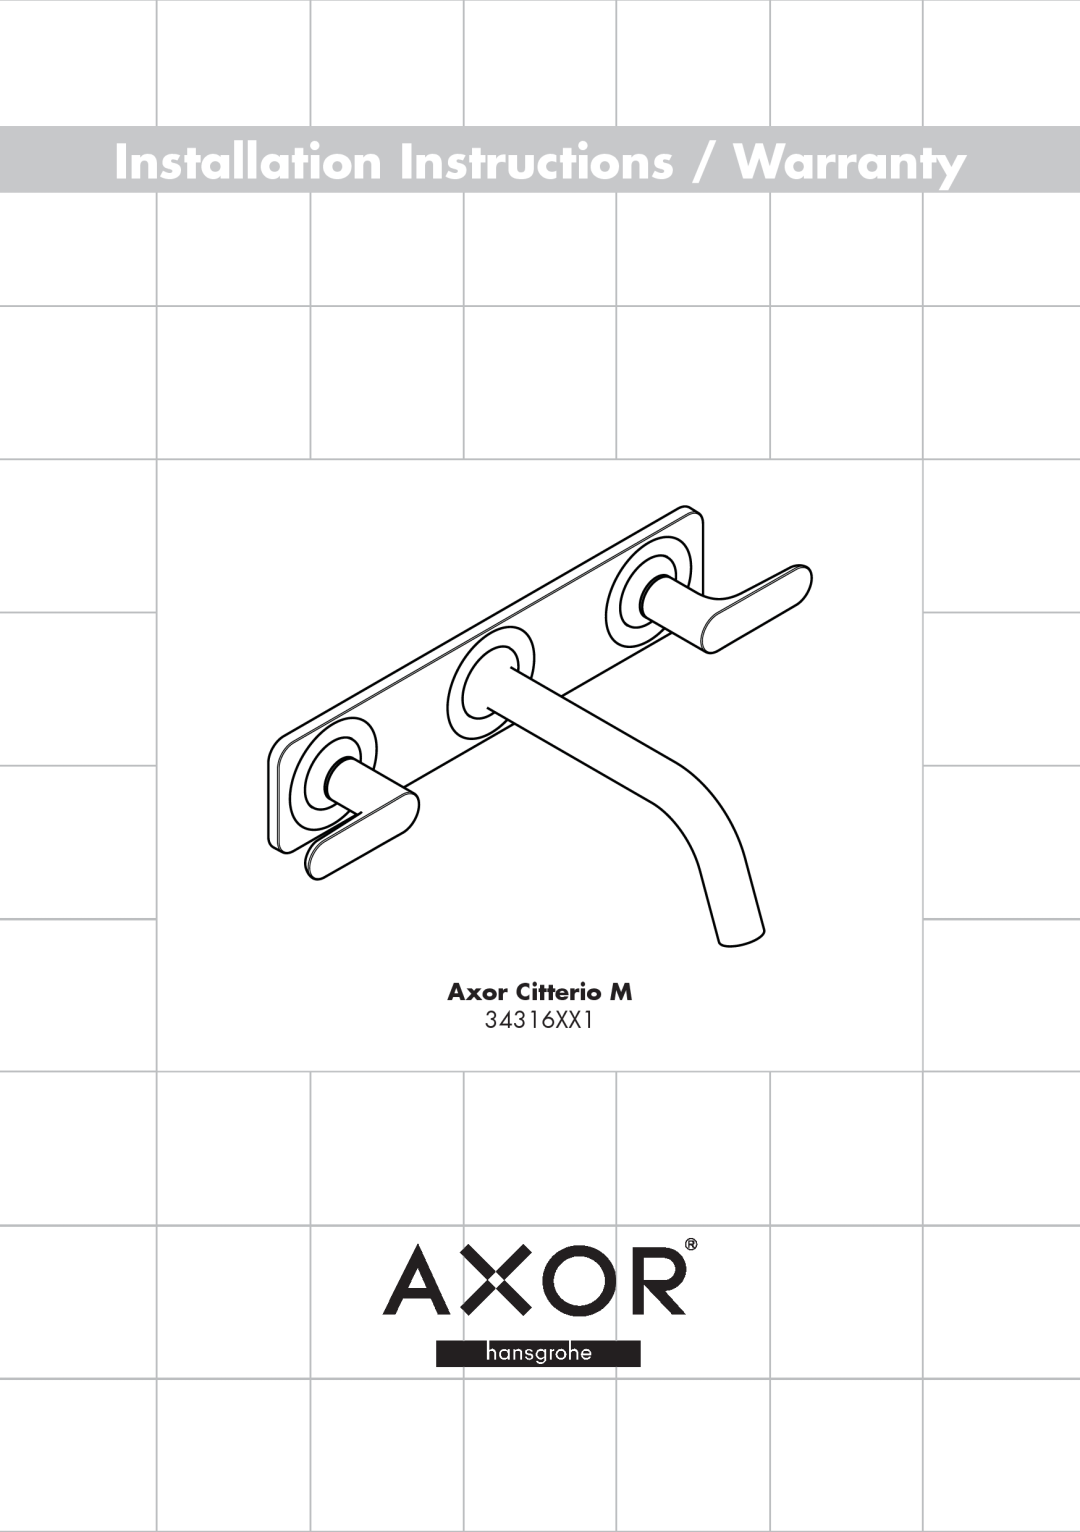 Axor 34316XX1 installation instructions Installation Instructions / Warranty, Axor Citterio M 